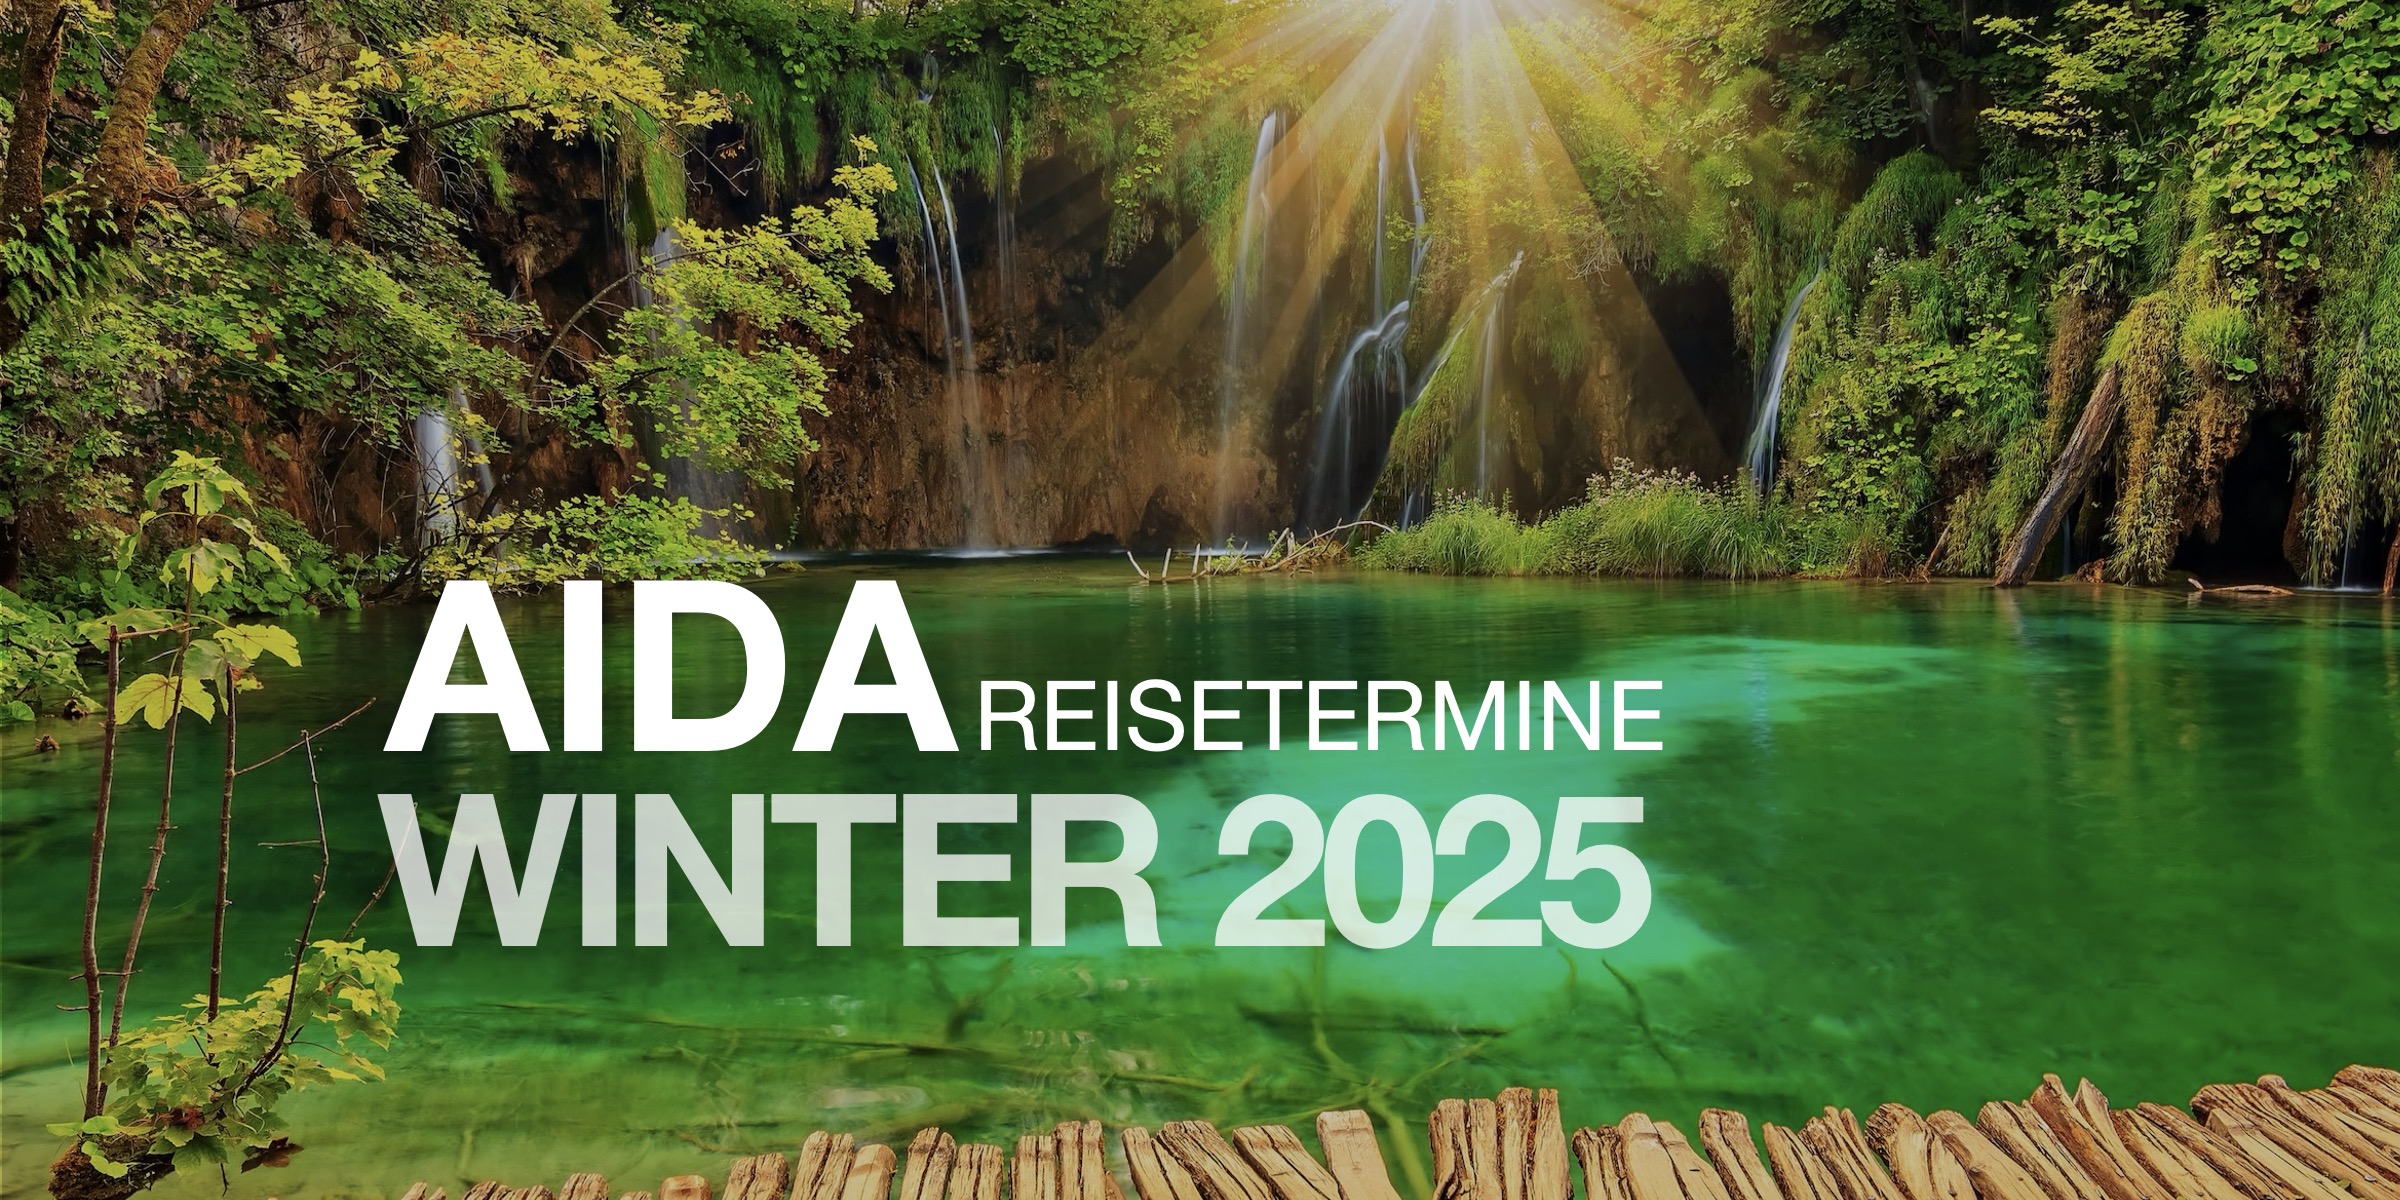 aida cruises routen winter 2025 kachel